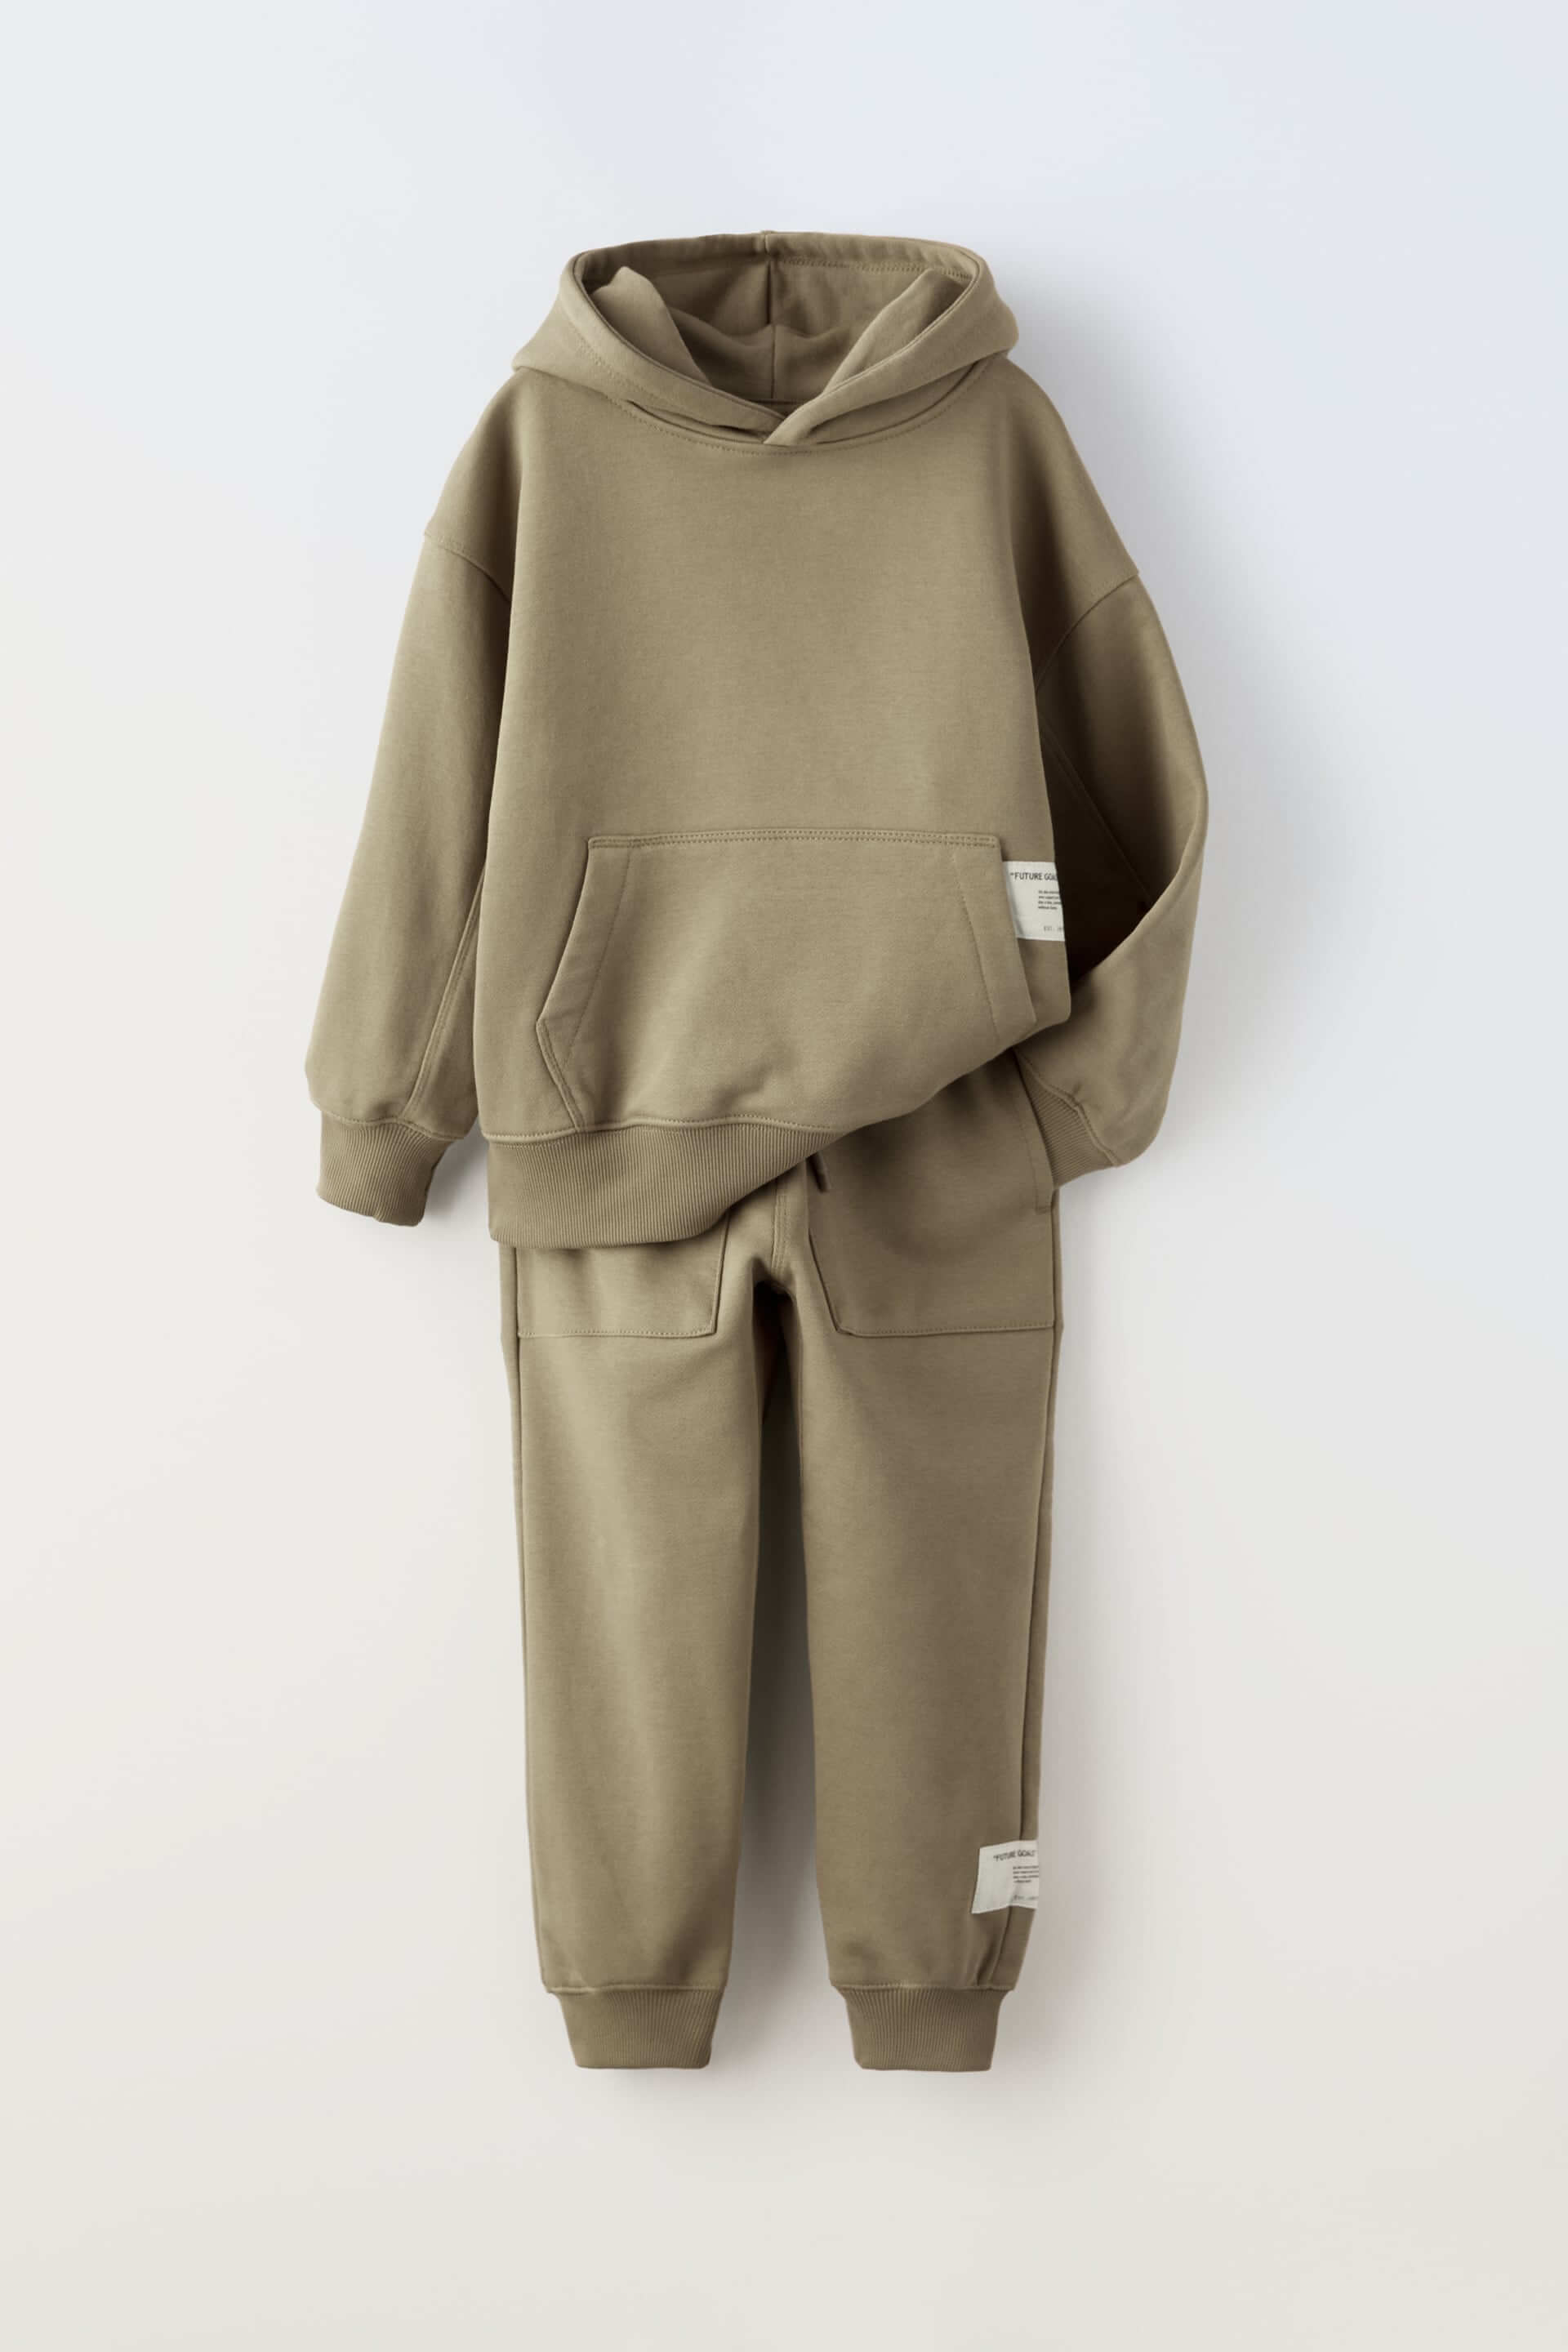 Комплект из худи и брюк Zara Plush, 2 предмета, коричневый/серо-коричневый комплект zara kids plush 2 предмета темно серый